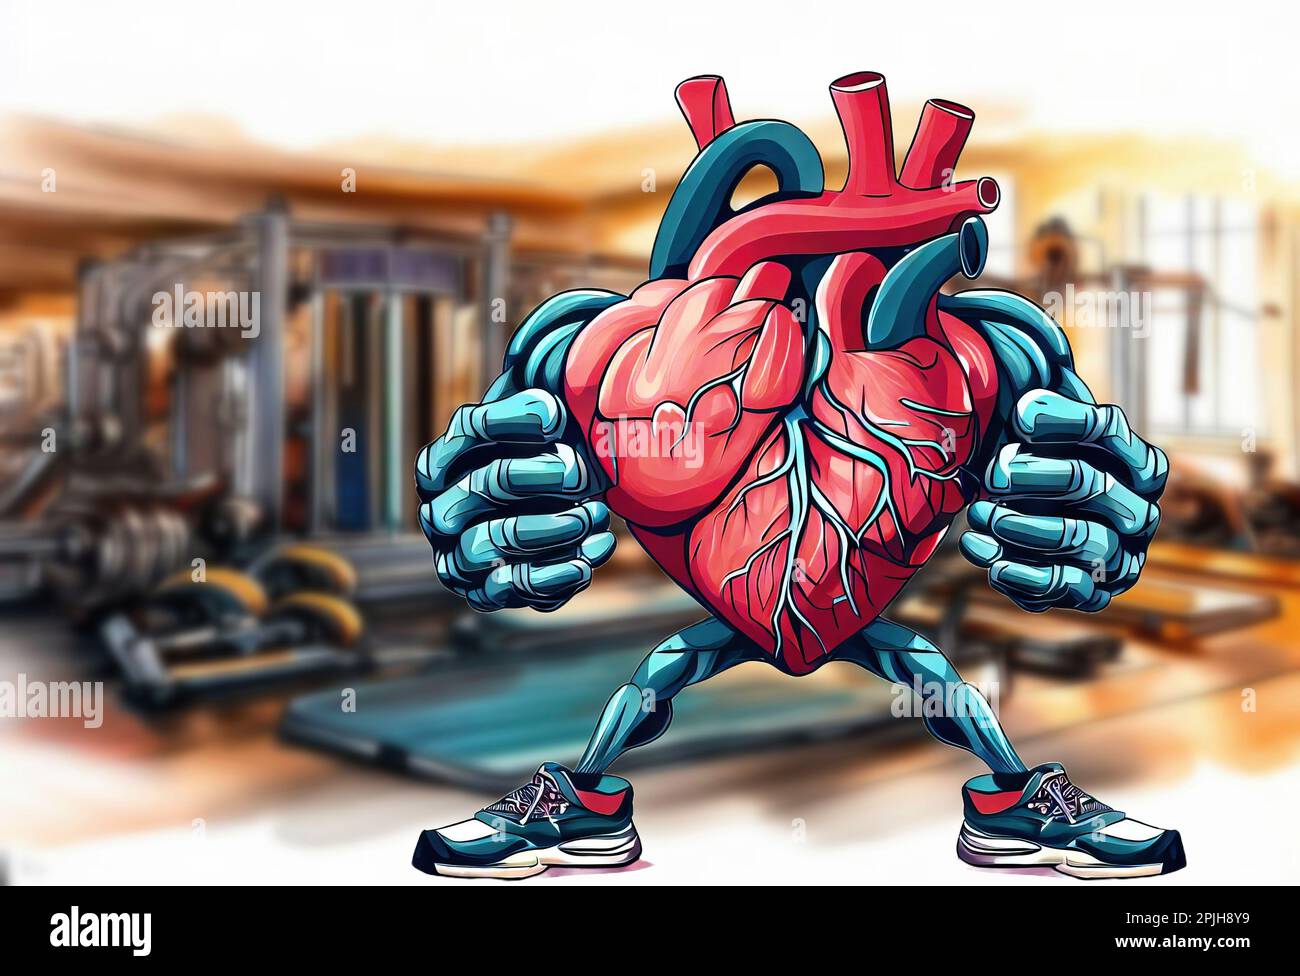 Trainiere dein Herz, ein konzeptionelles Bild, das zeigt, wie viel Gymnastik gut für das Herz ist Stockfoto